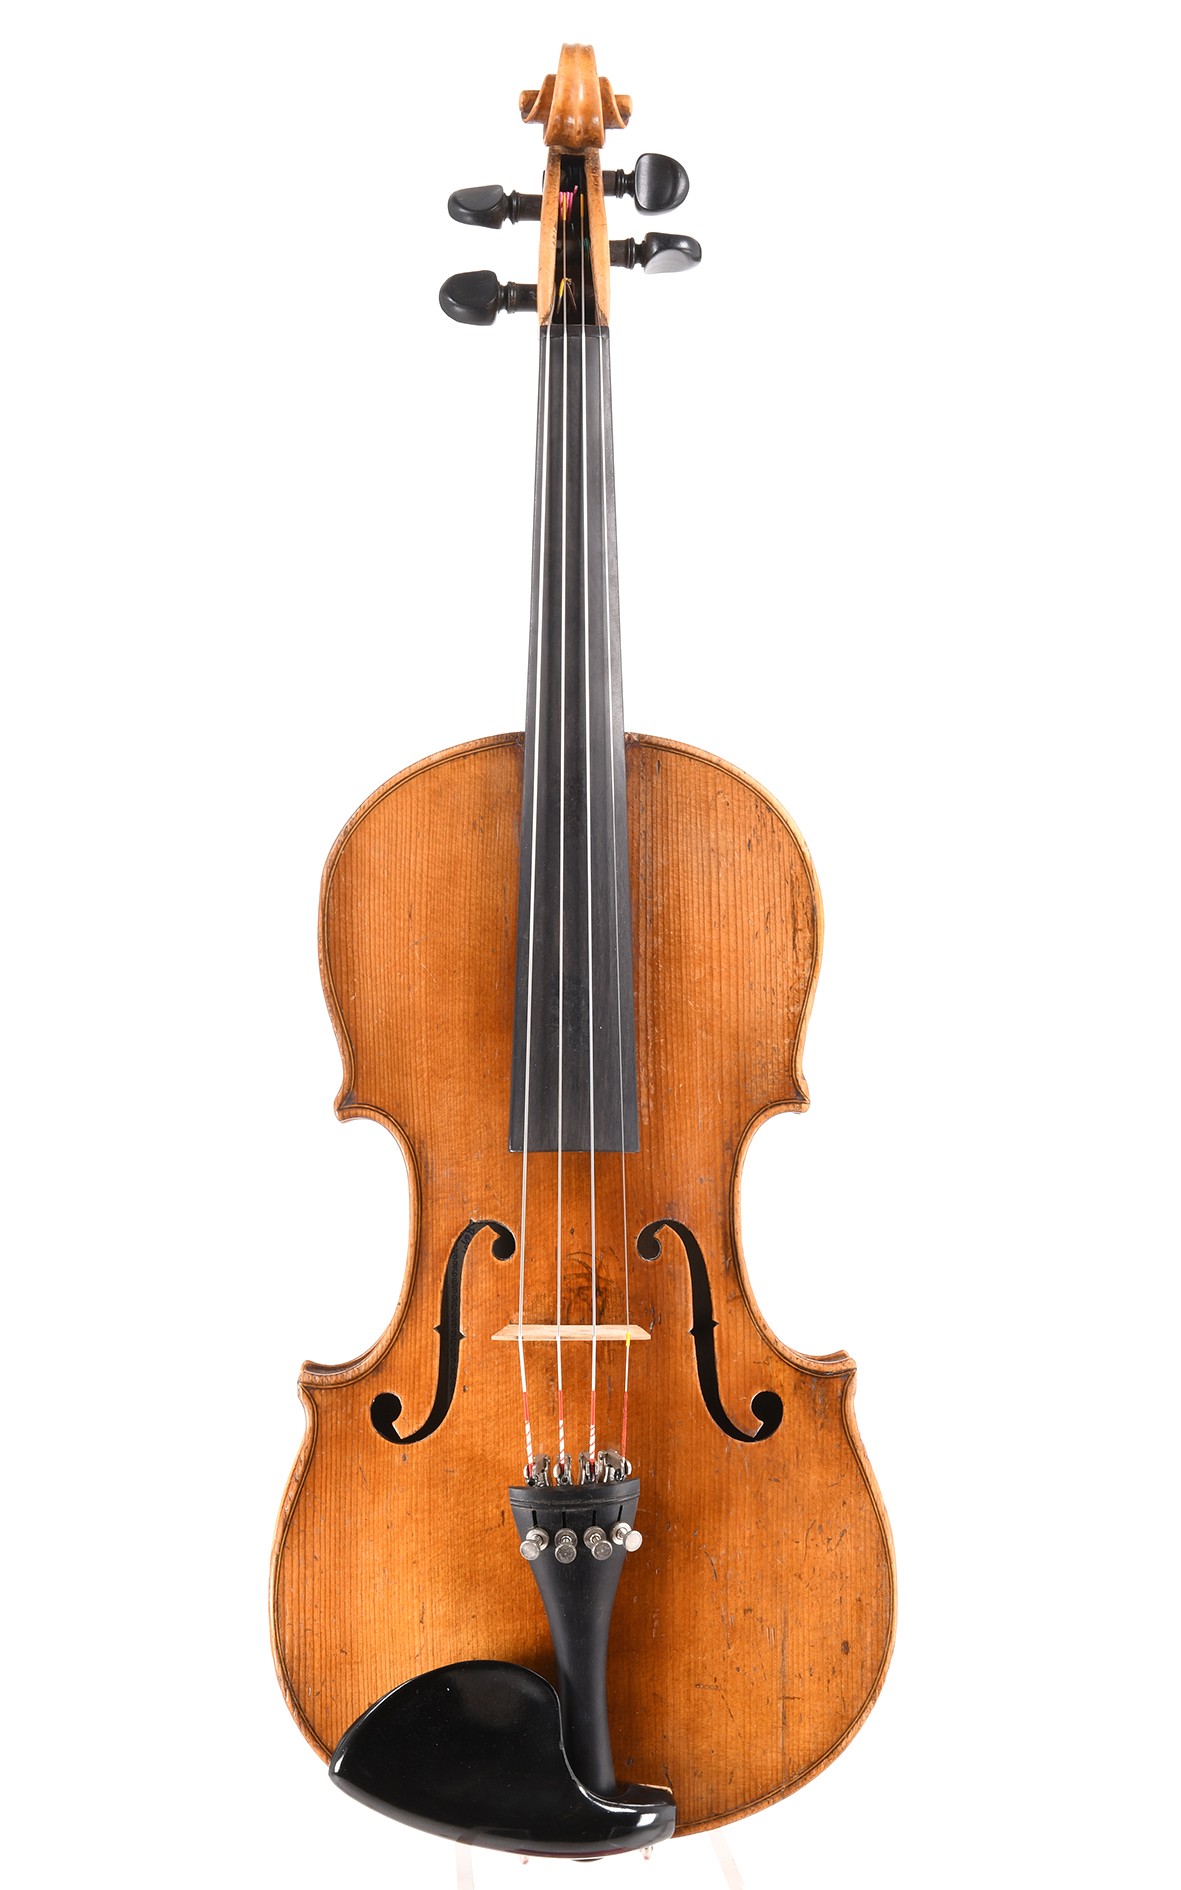 Fine 3/4 violin from Markneukirchen